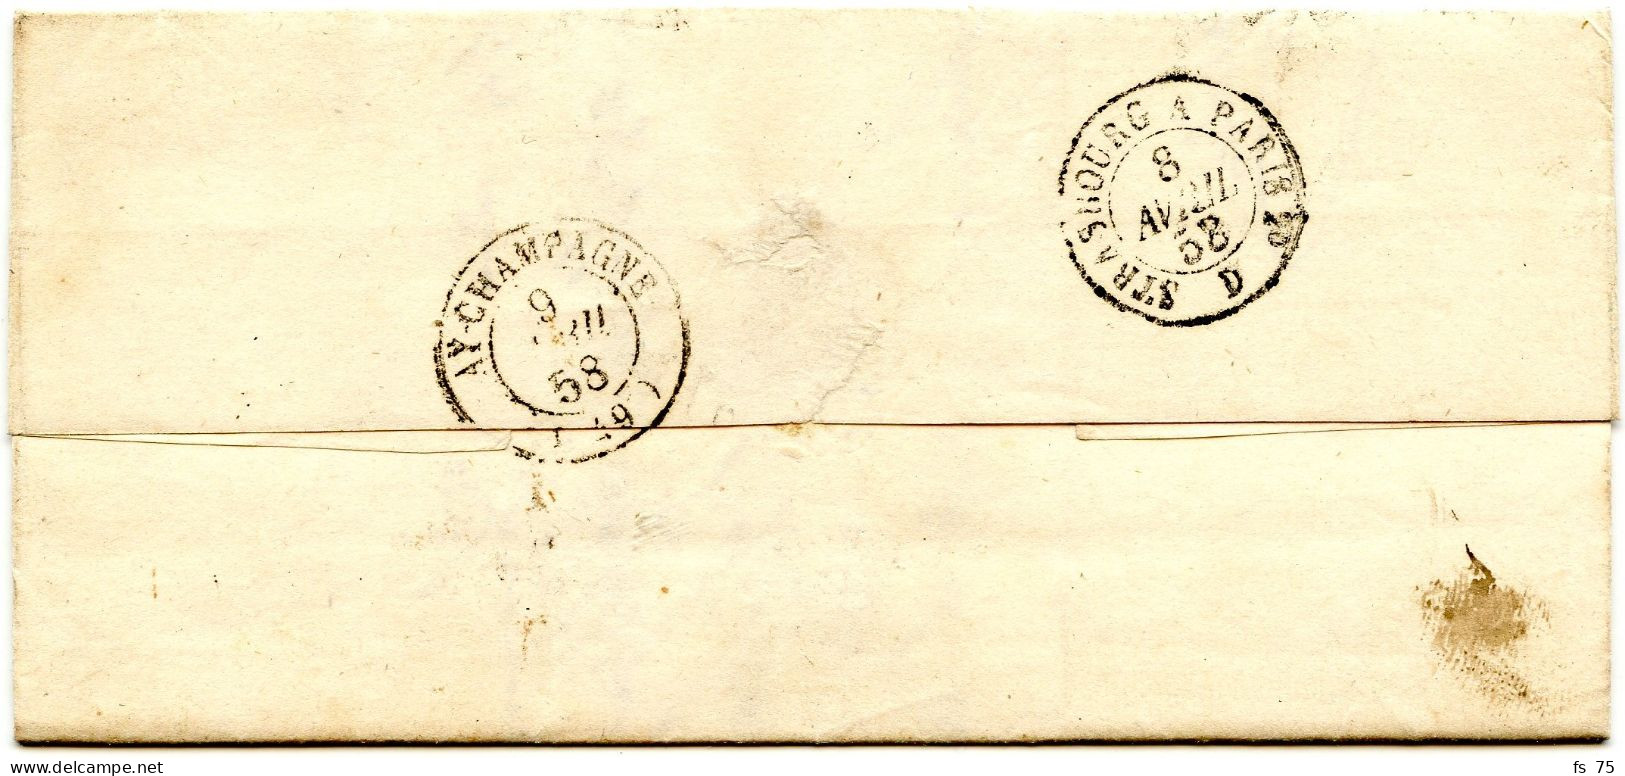 ALLEMAGNE - BLIESKASTEL + DEP. LIM. + TAXE 3, 1858 - [Voorlopers